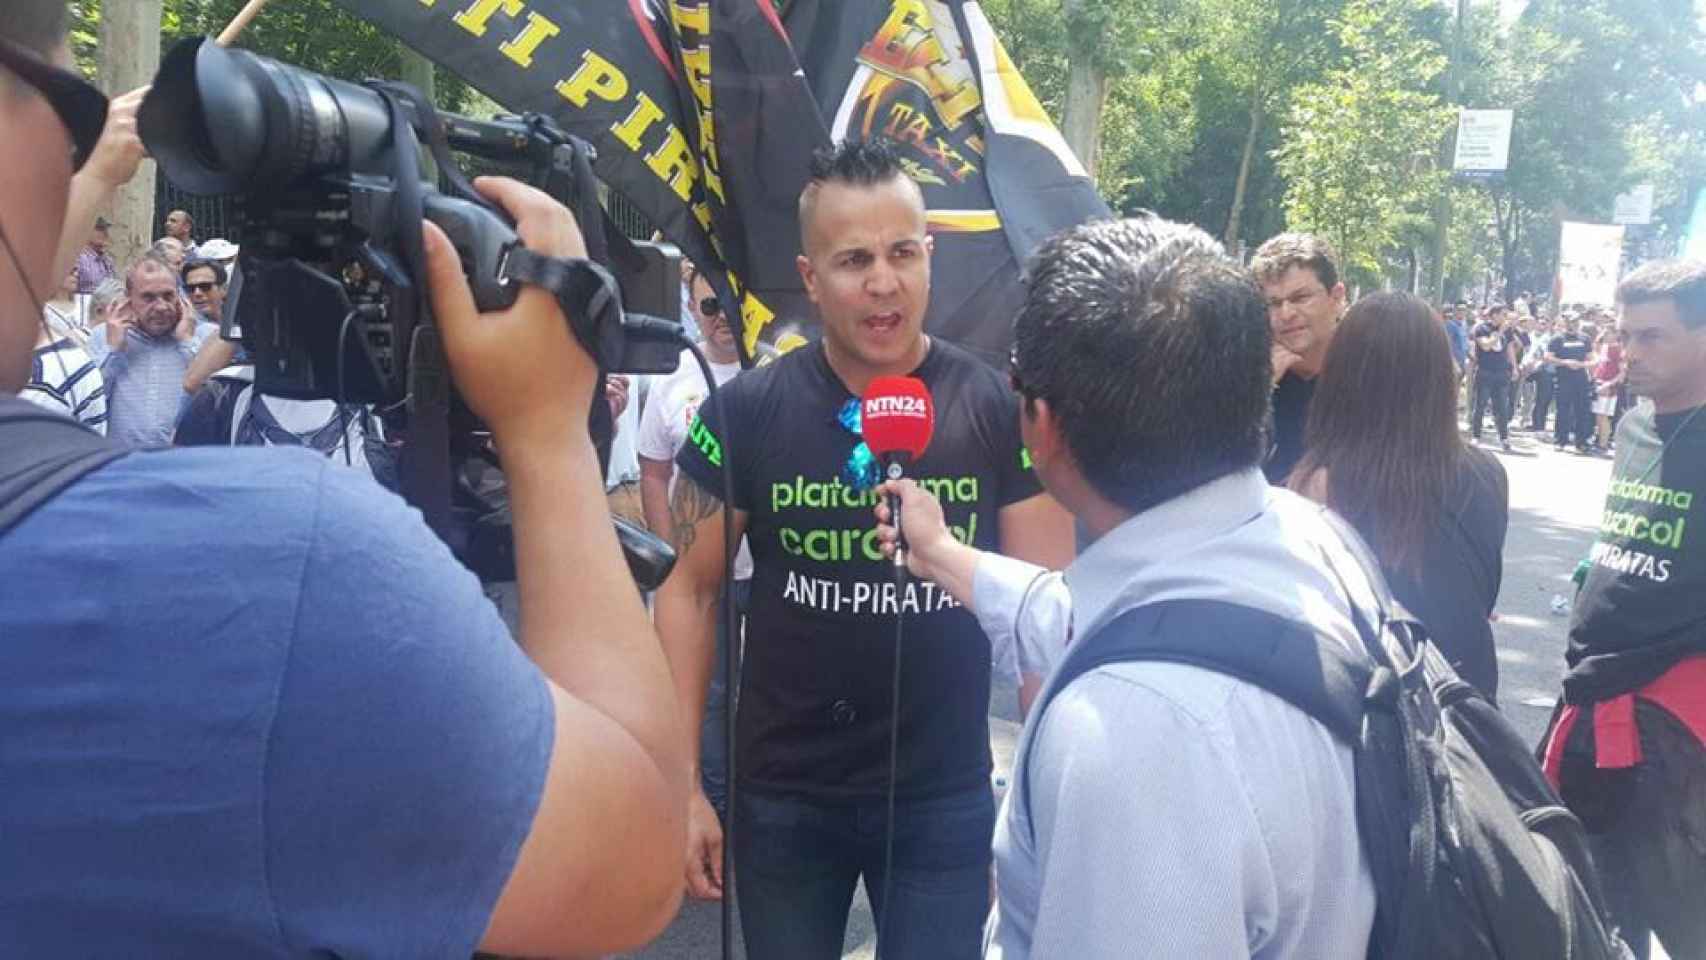 Peseto loco, atendiendo a los medios durante la manifestación, es una de las figuras más radicales de los taxistas en sus protestas